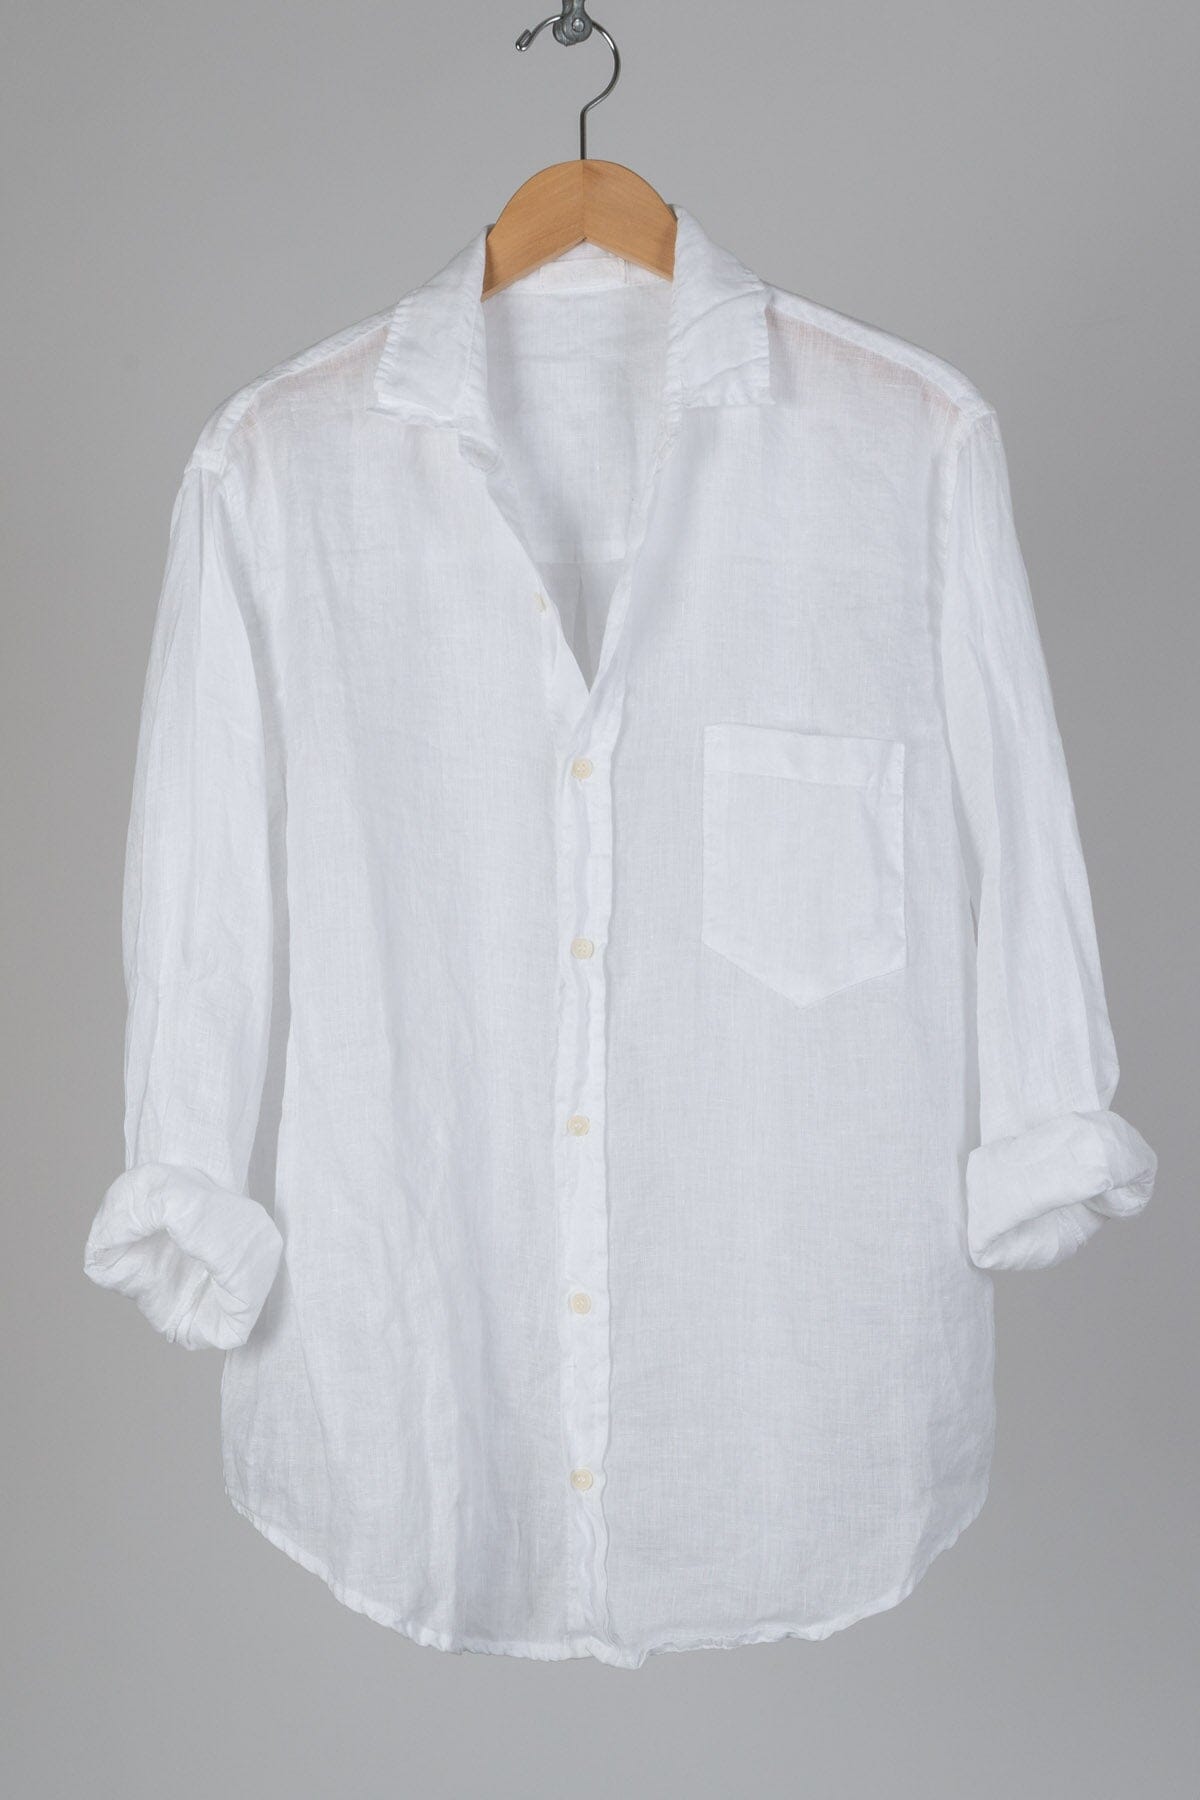 Joss - Linen S10 - Linen Shirt/Top/Tunic CP Shades white